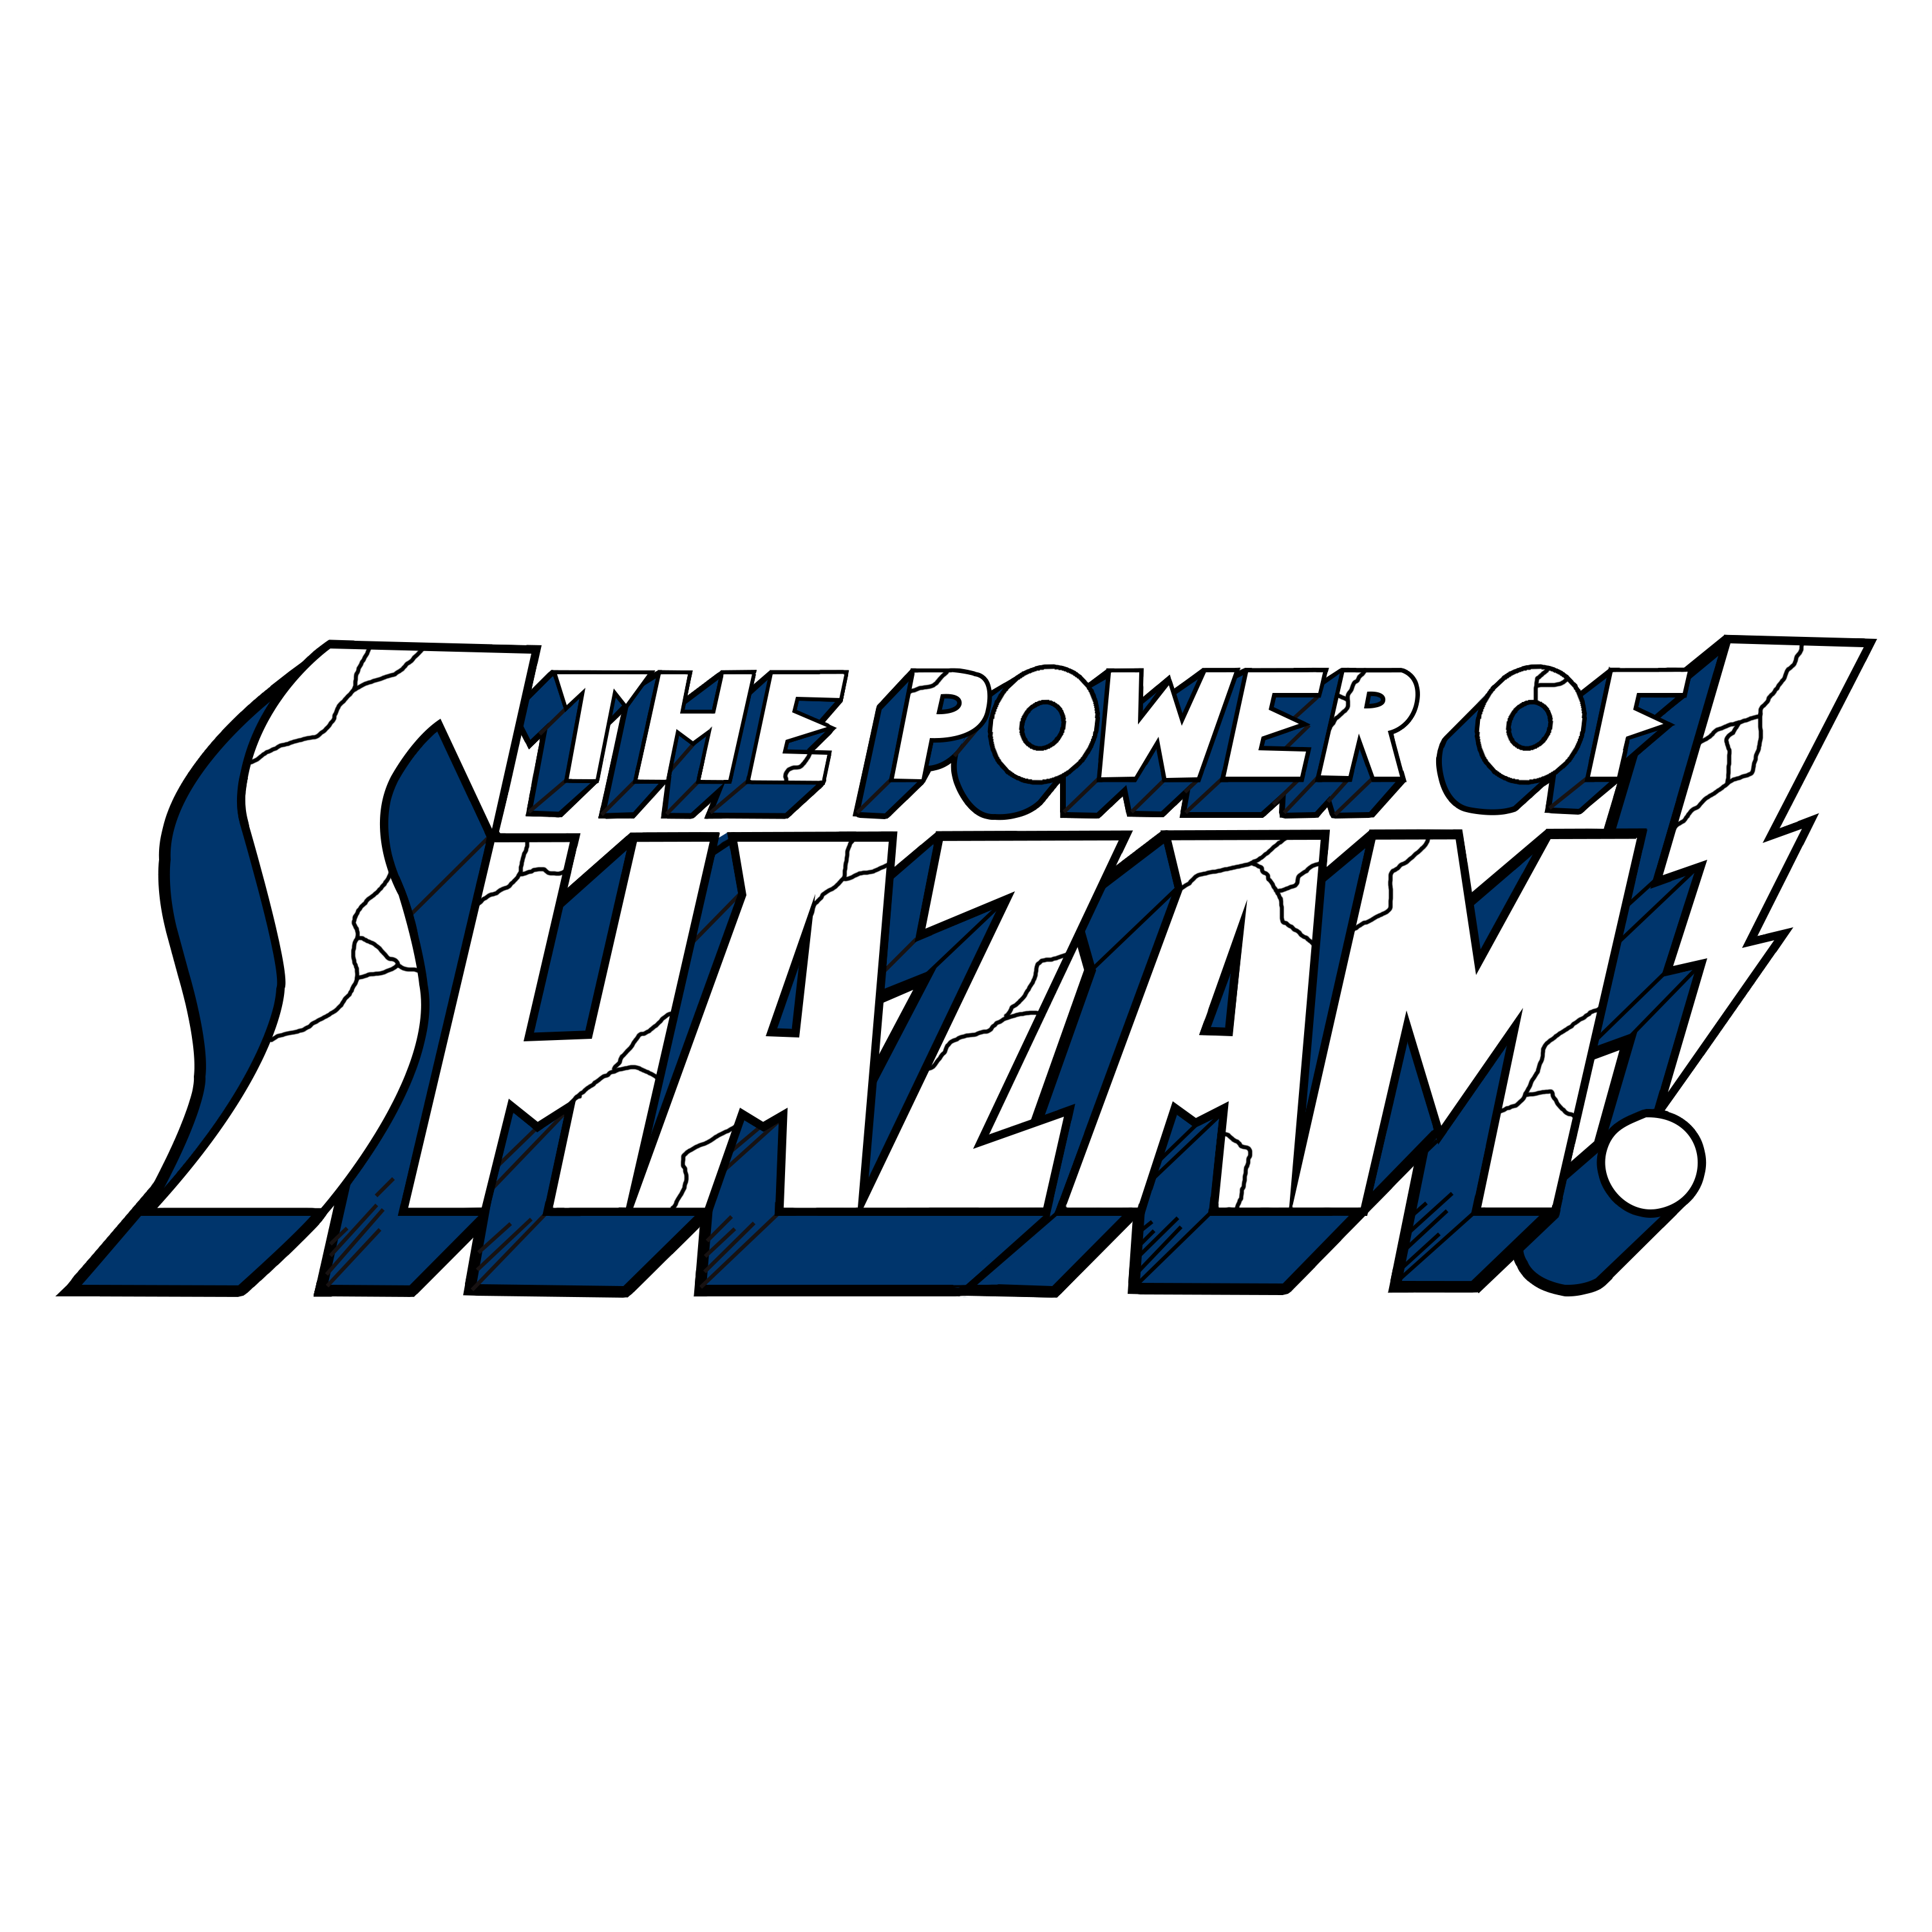 Shazam! Art